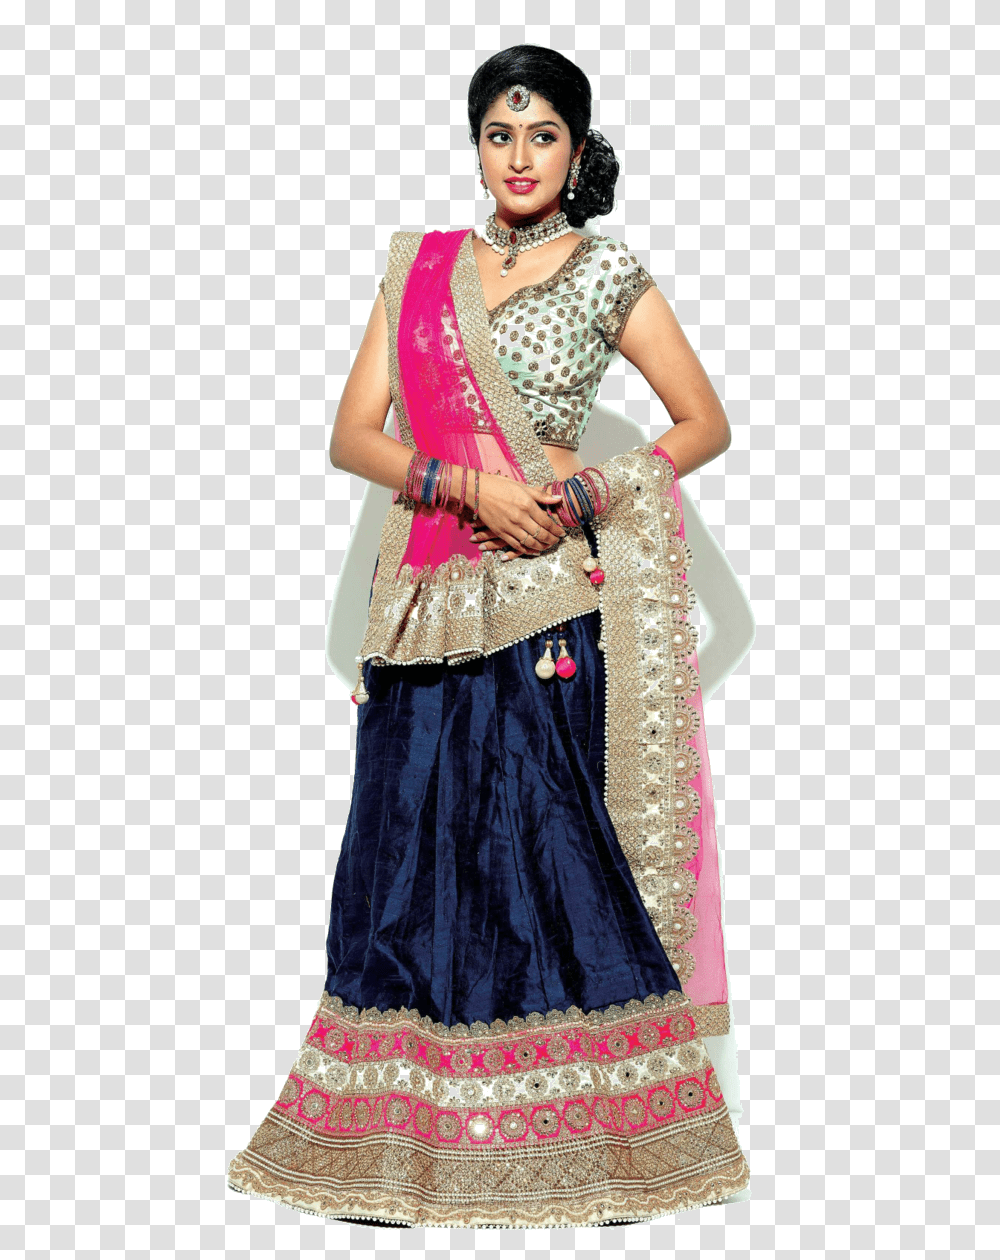 Actress Tanya Hd Photos Old Actor Ravichandran Grand Tamil Tanya Ravichandran, Person, Evening Dress, Robe Transparent Png